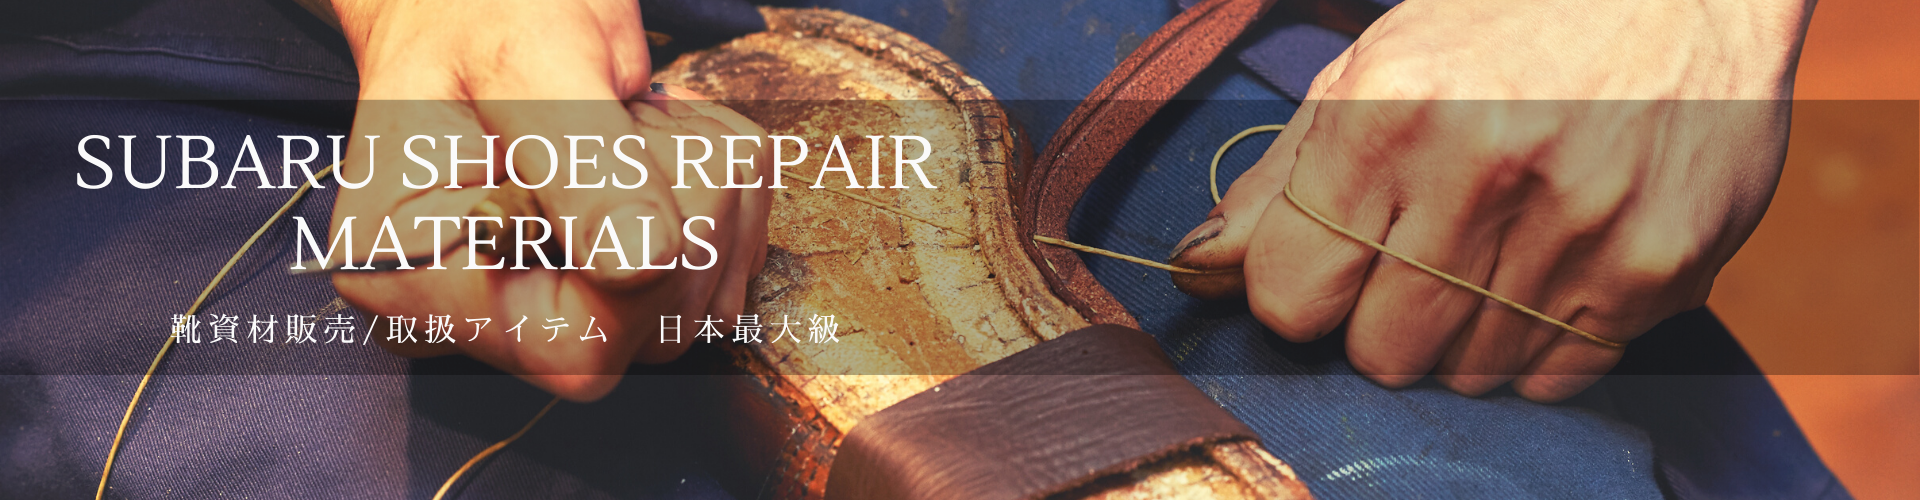 靴材料 靴修理機械の総合卸